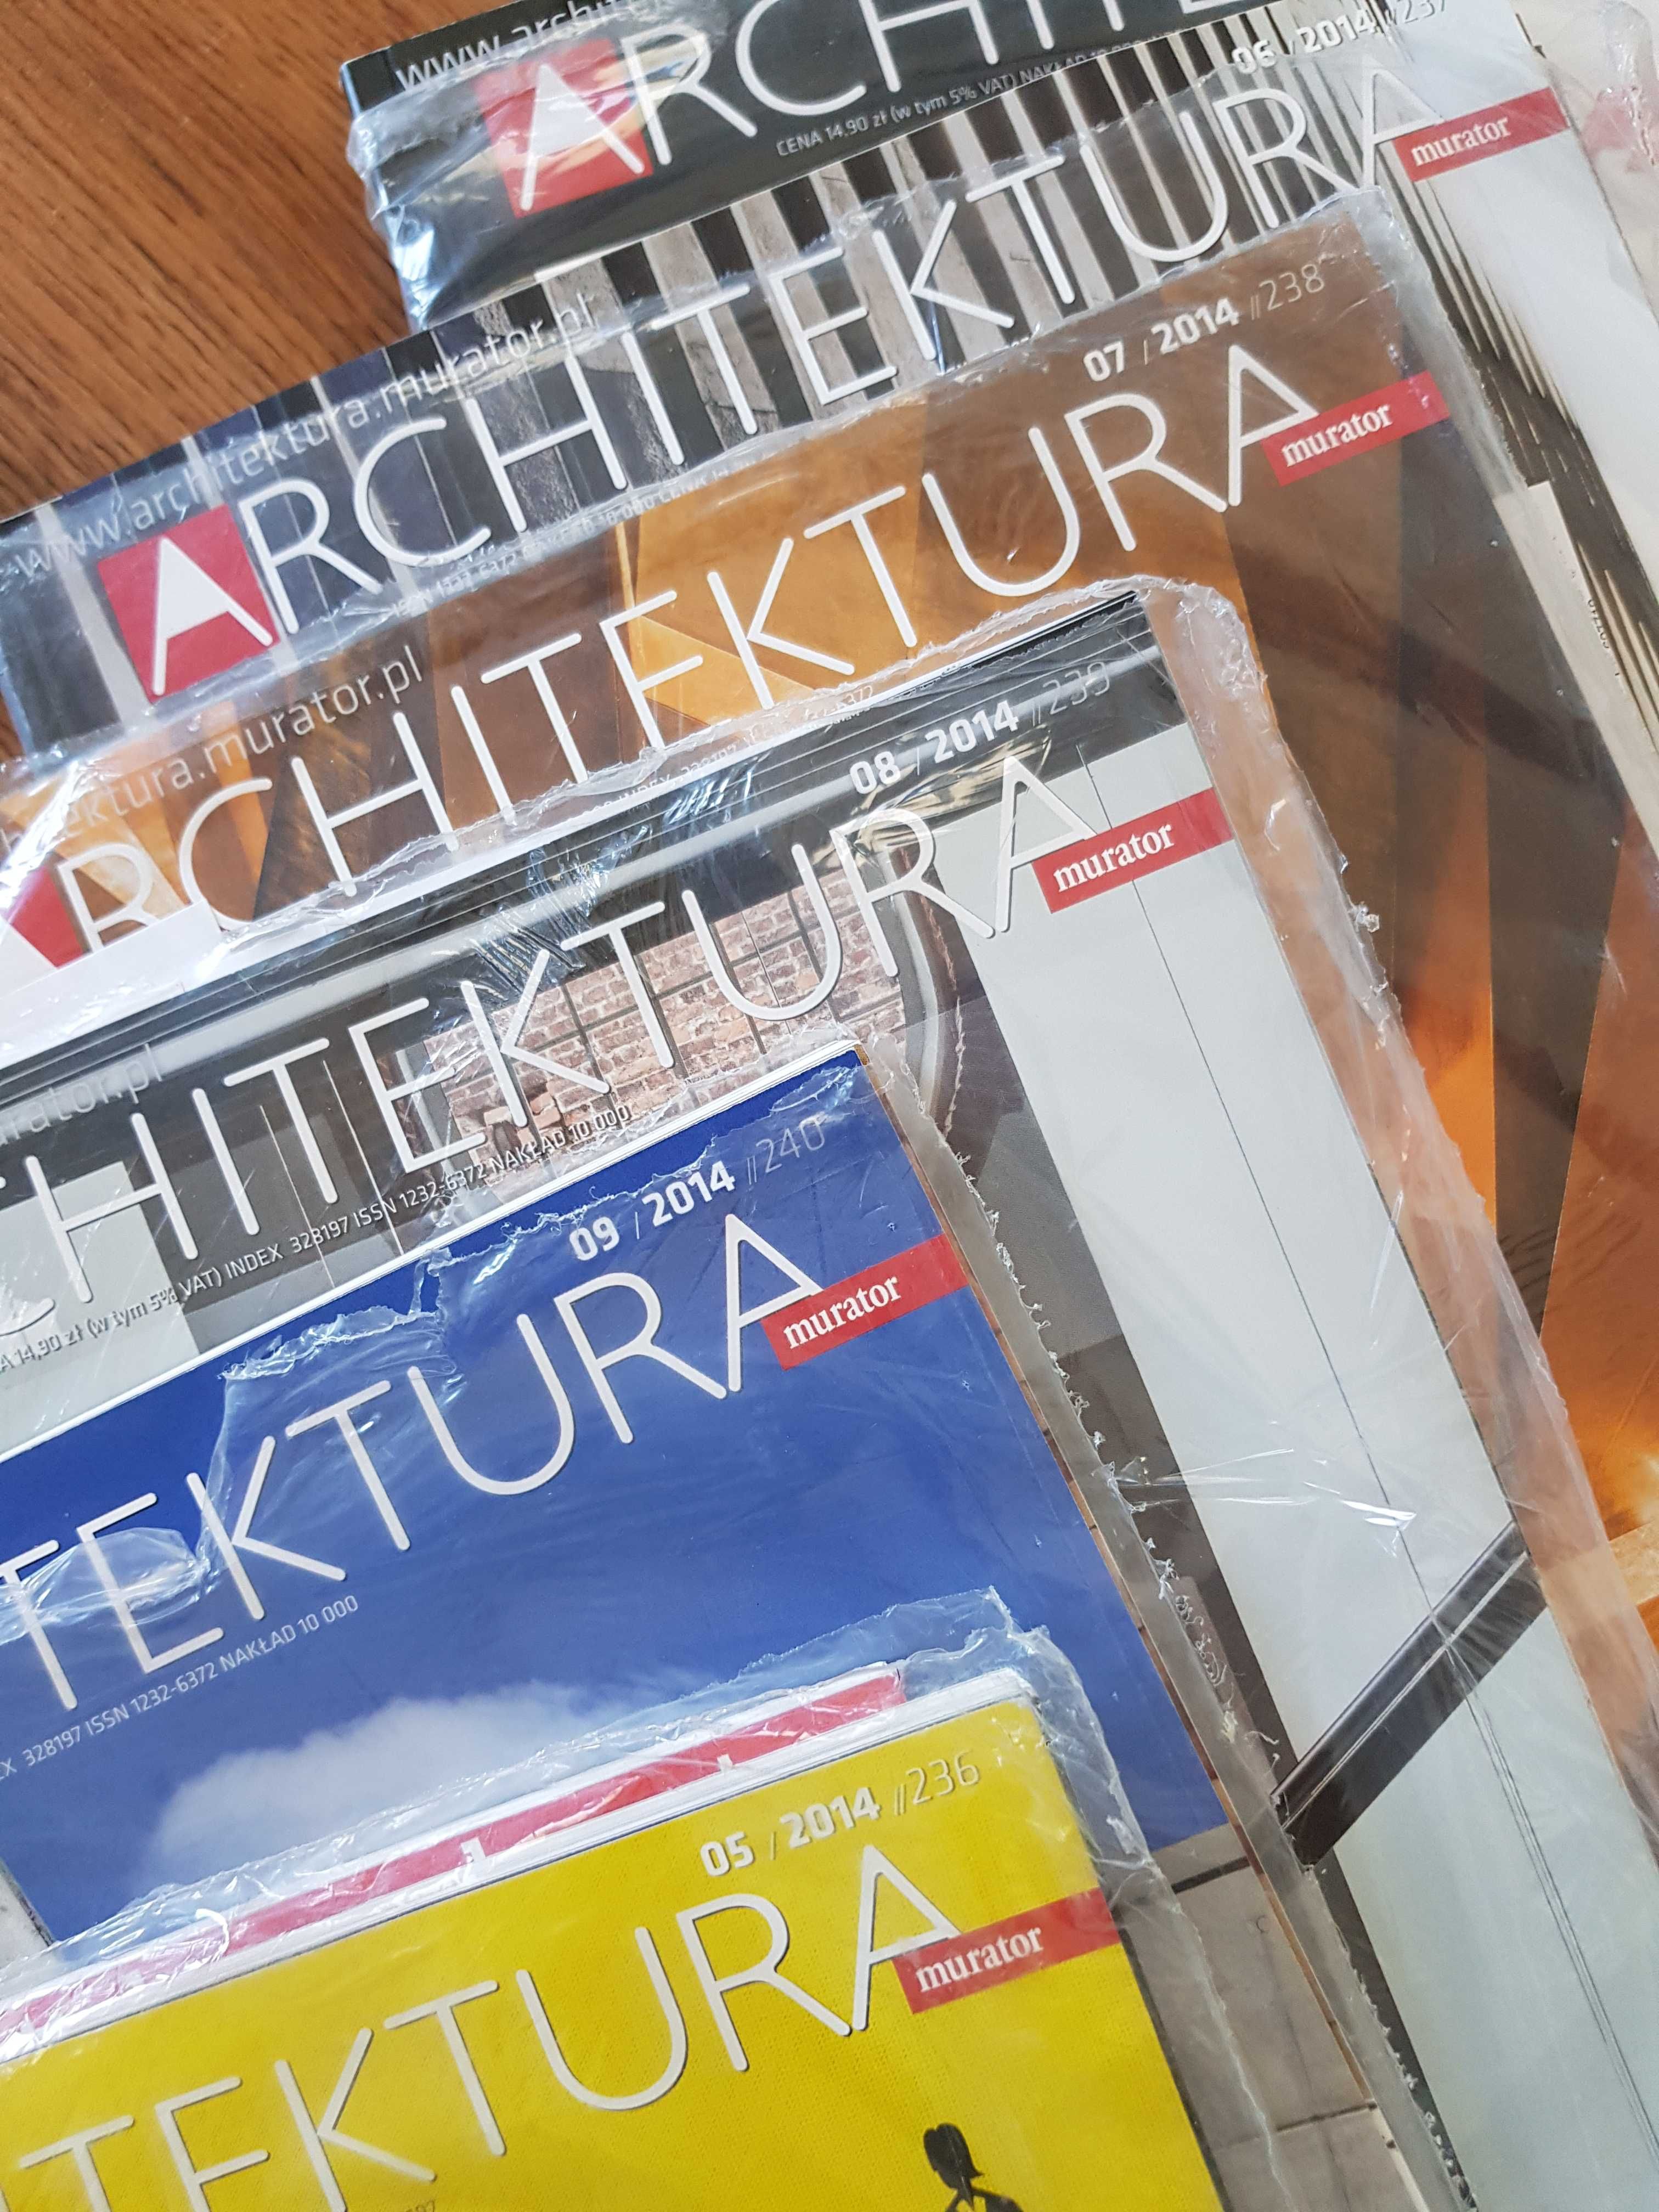 Architektura murator- czasopismo z 2014r. 9sztuk